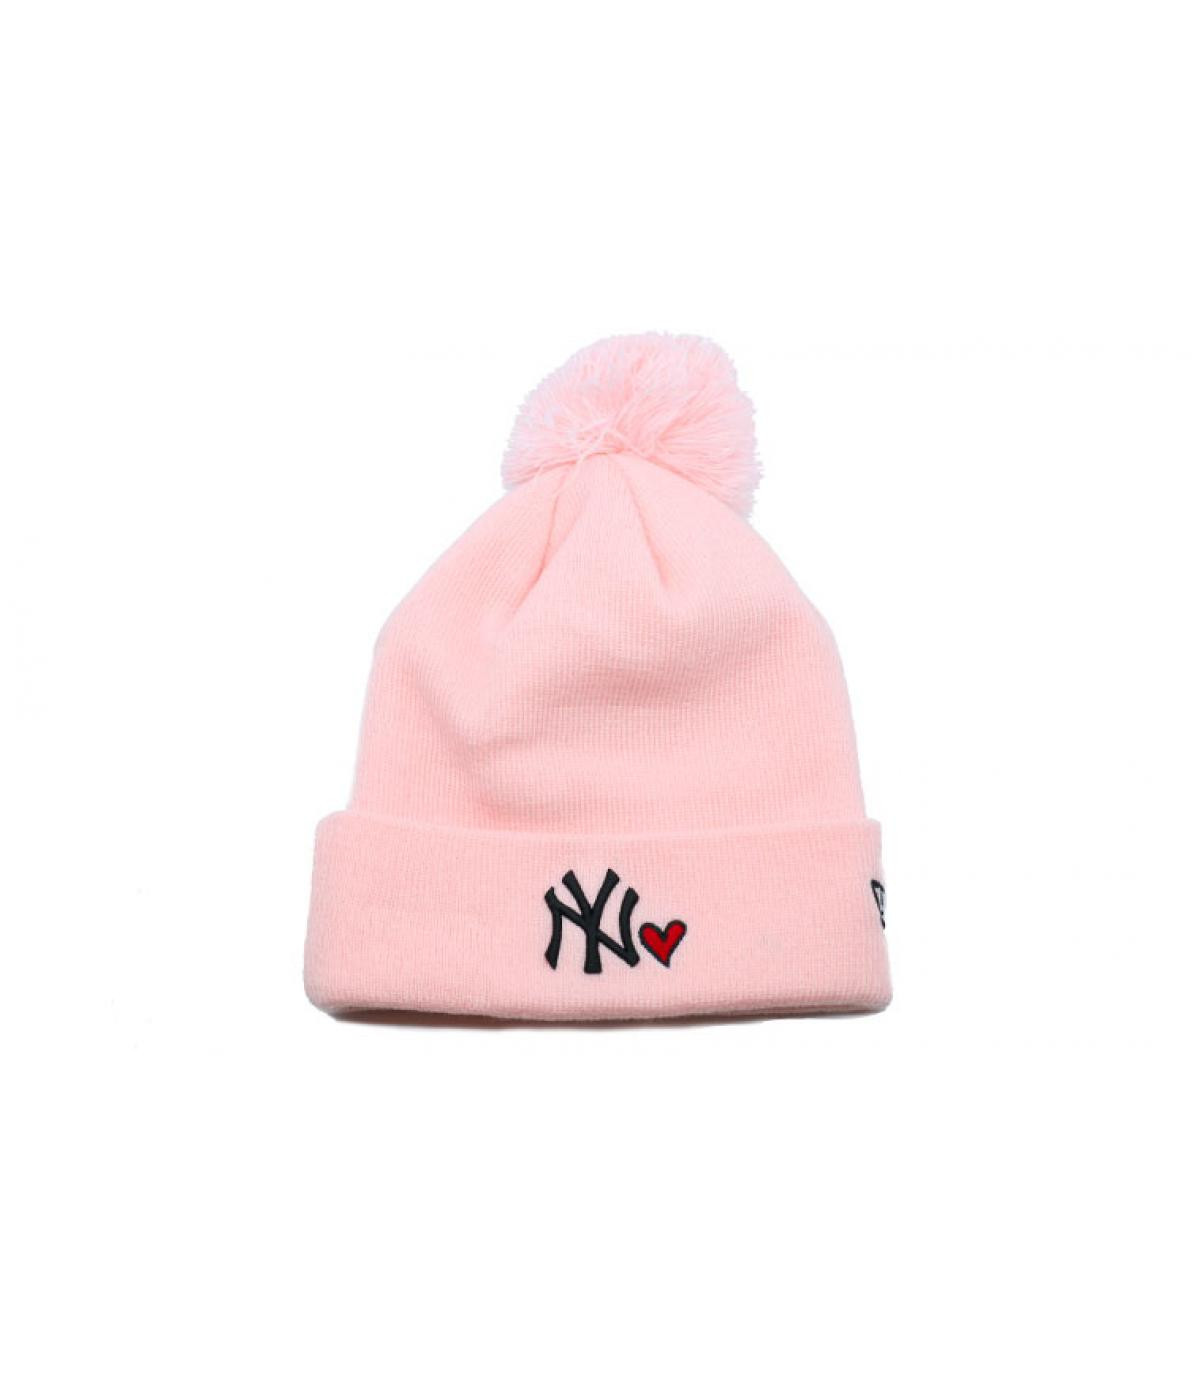 Bonnet Wmns Heart NY knit pink New Era